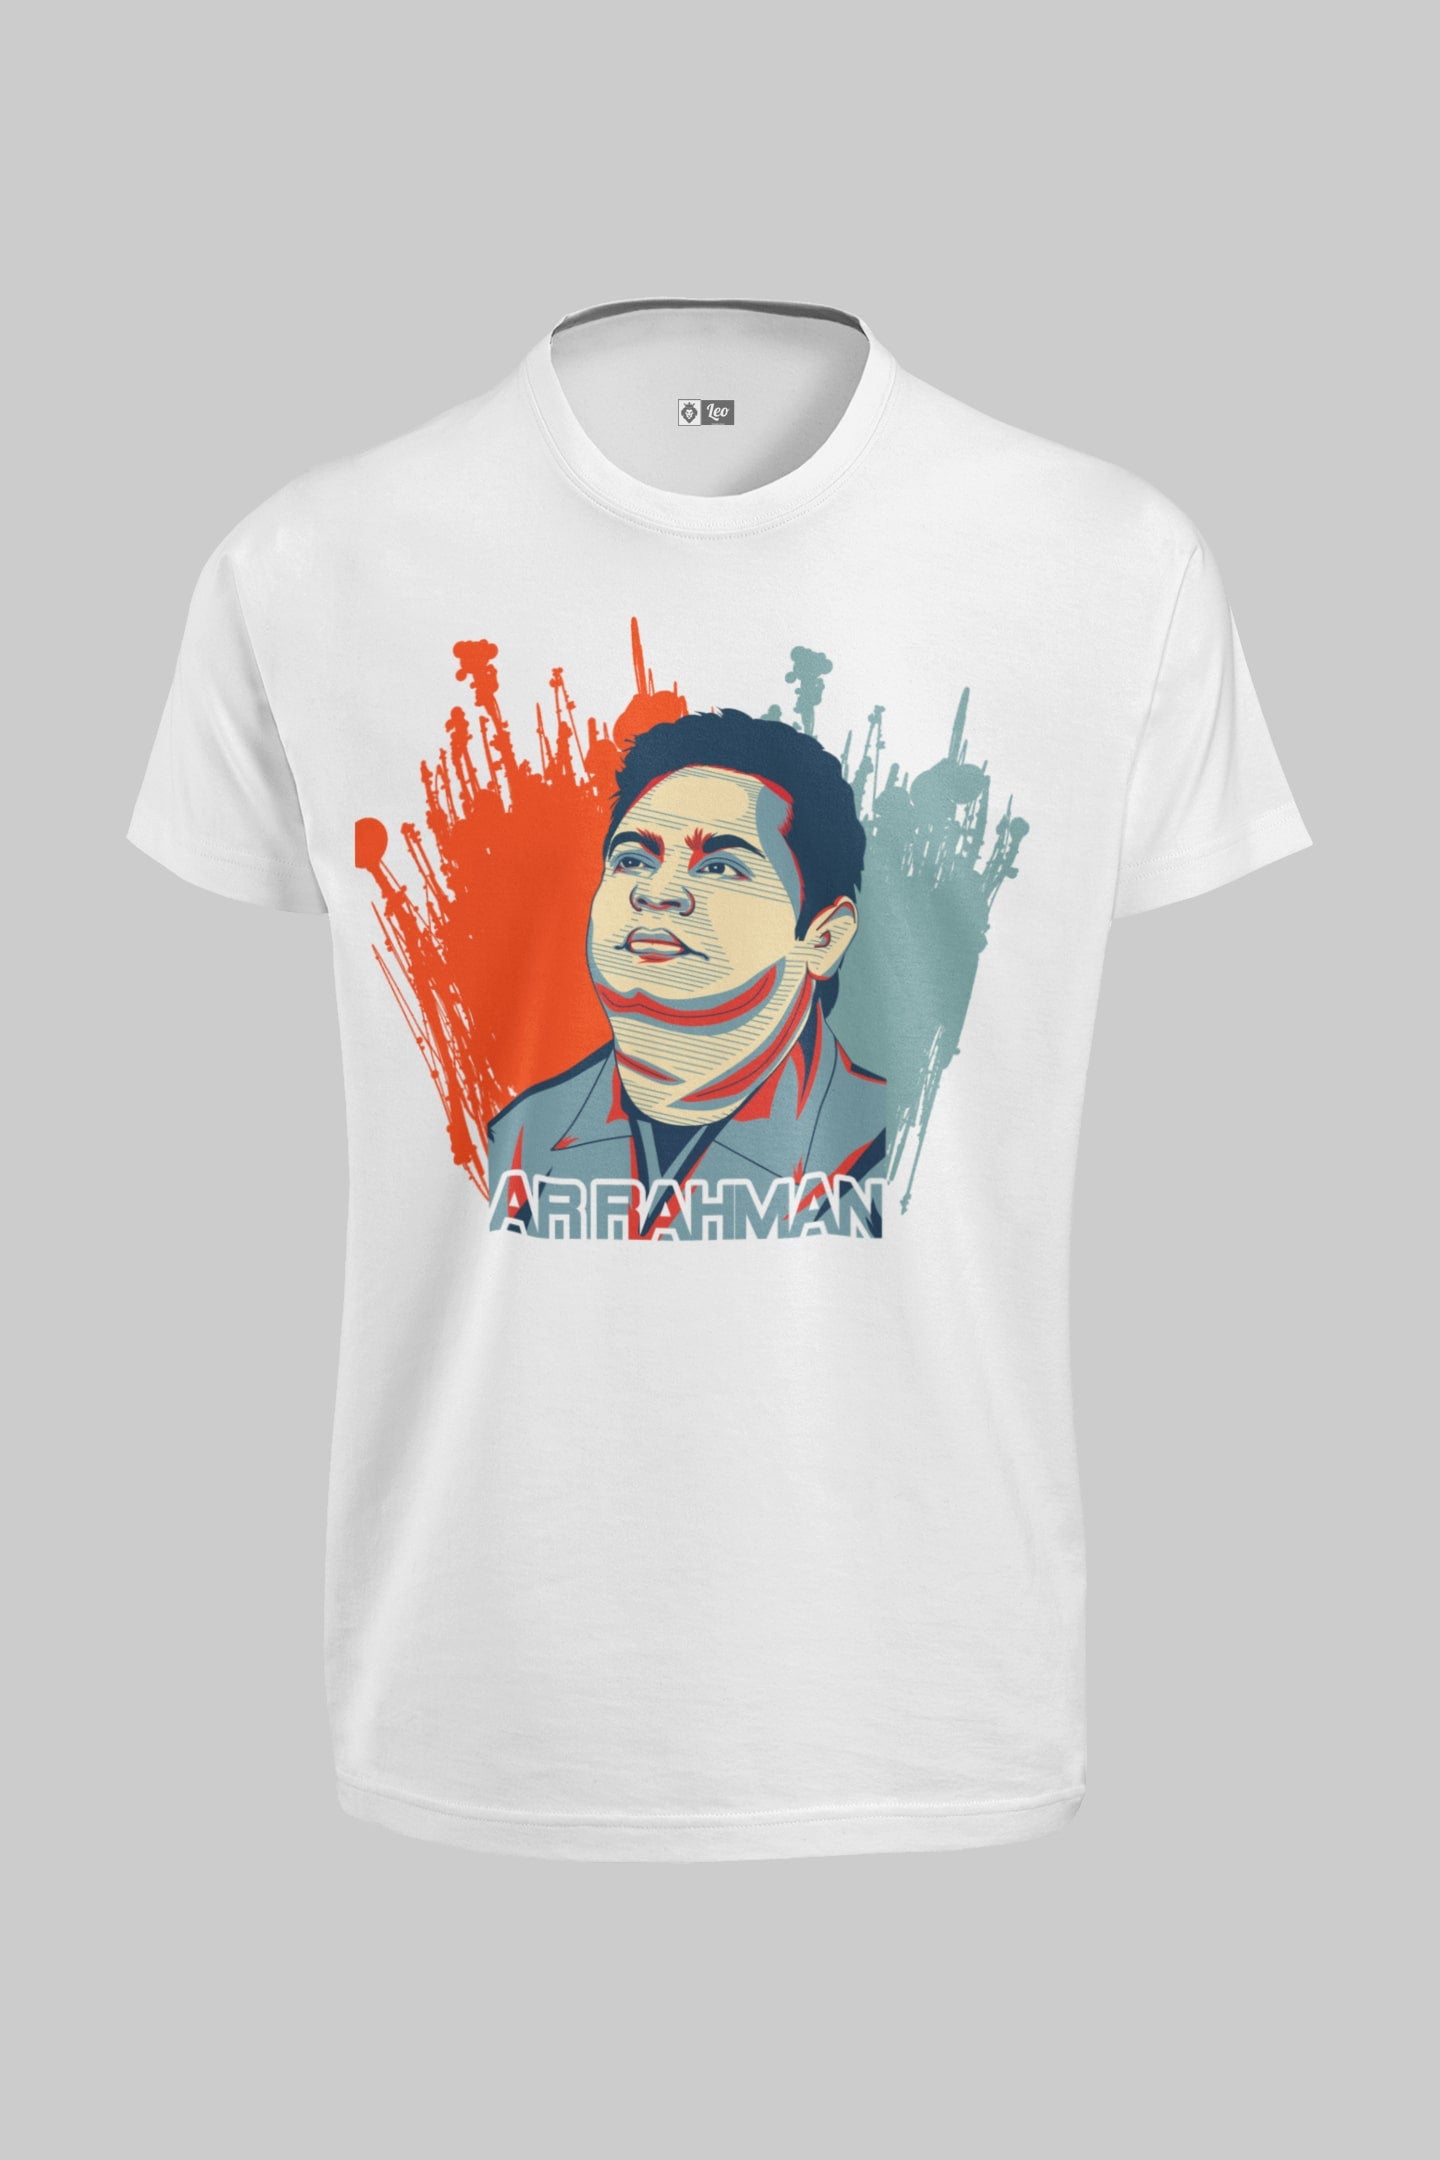 AR Rahman T-Shirt